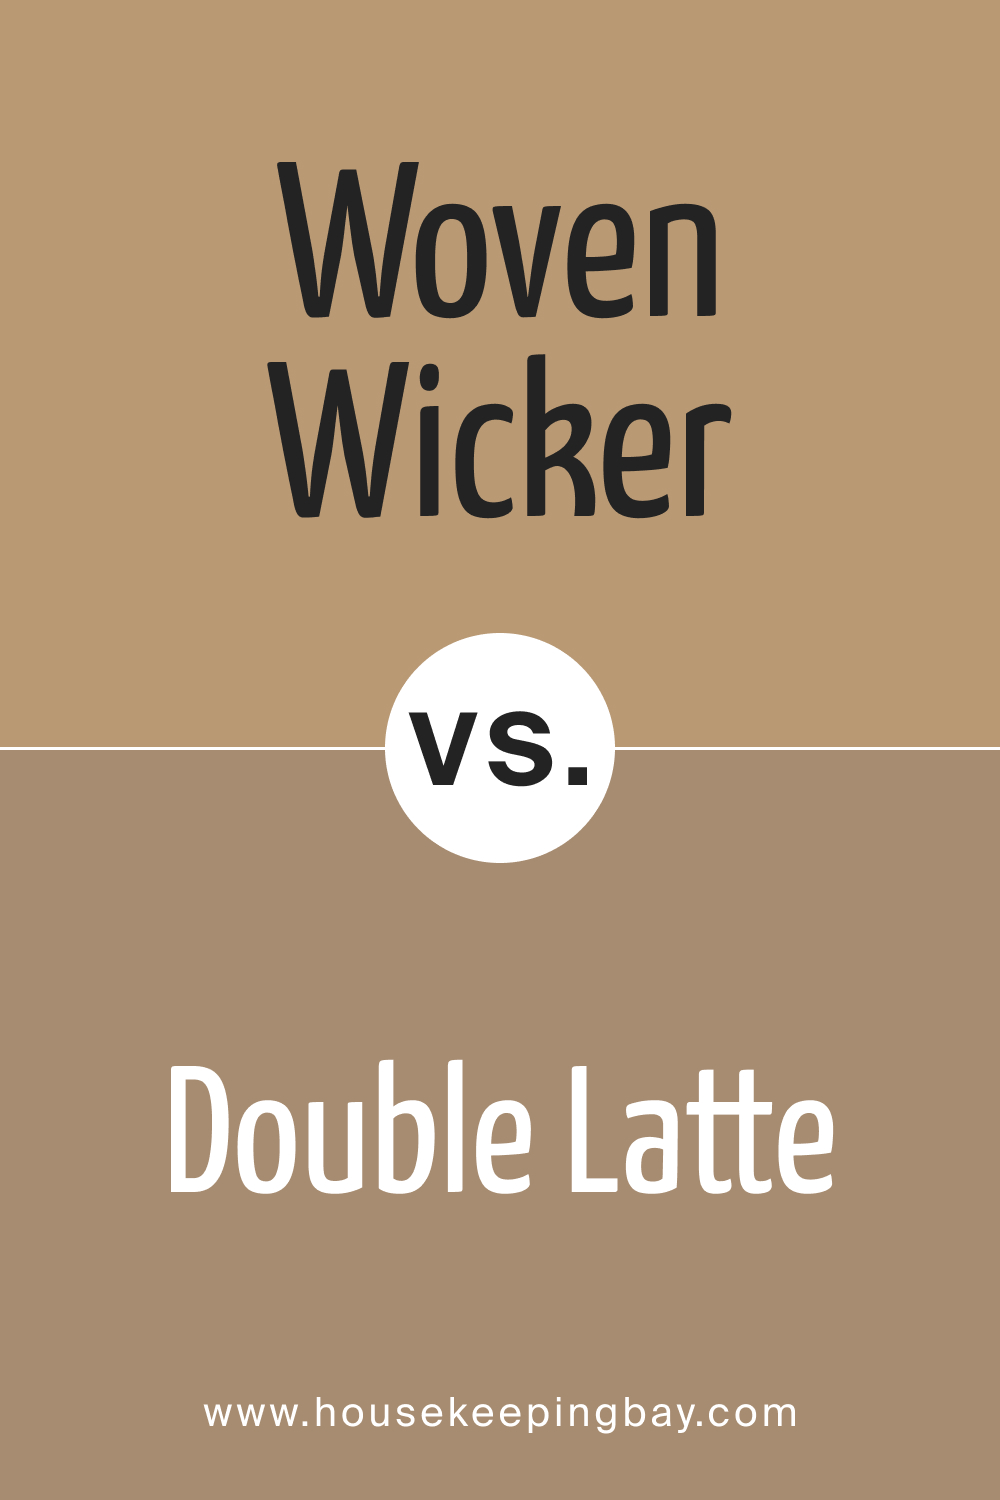 SW 9104 Woven Wicker vs. SW 9108 Double Latte